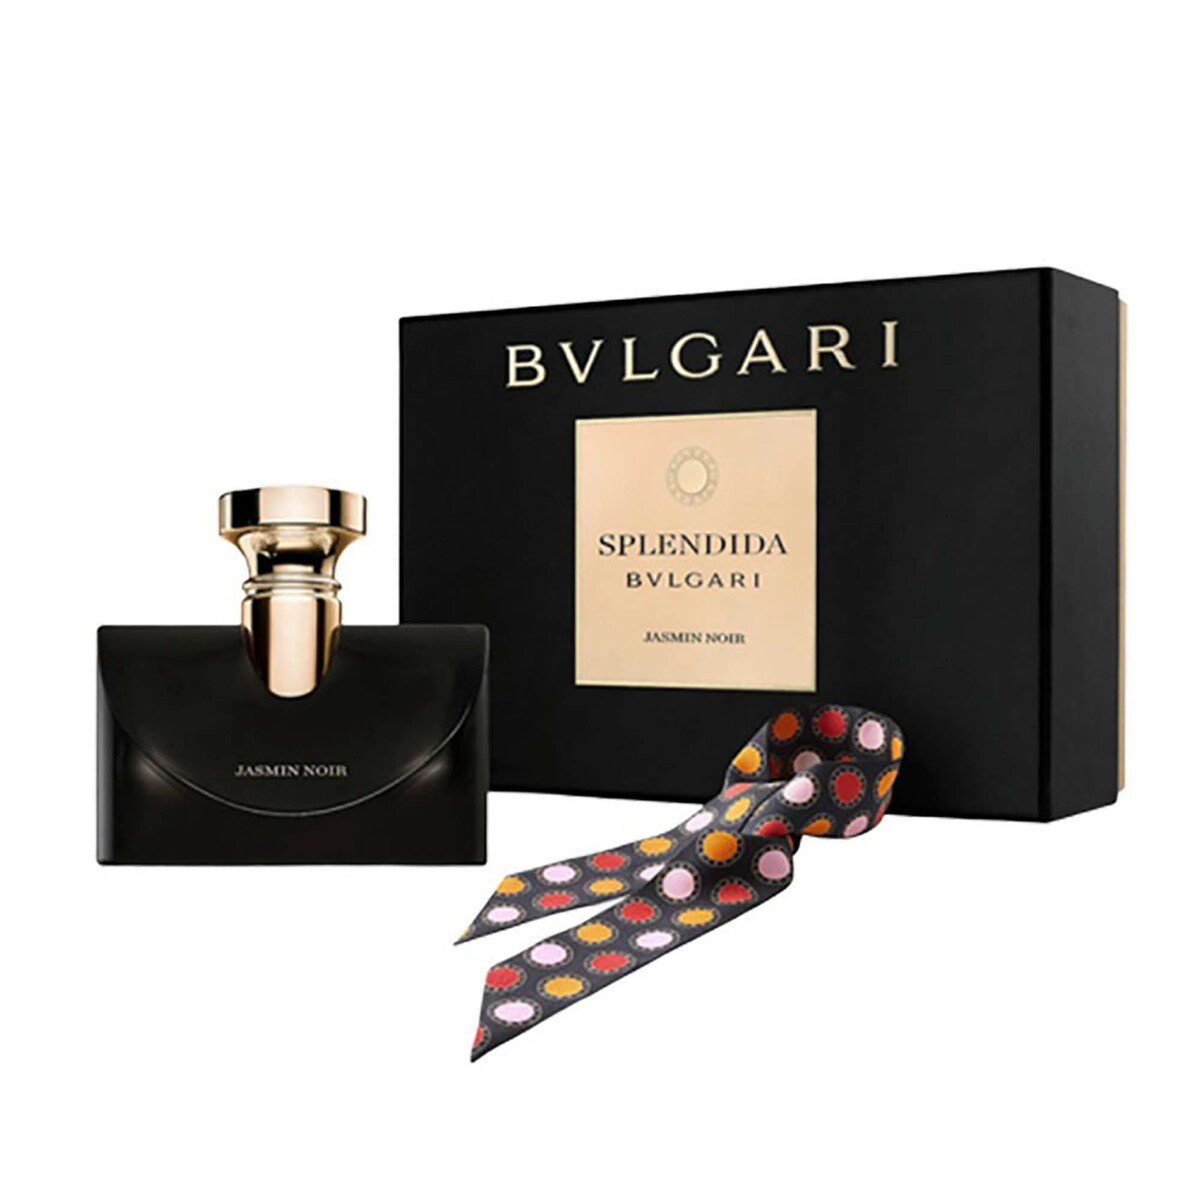 BVLGARI Jasmin Noir Splendida Eau De Parfum For Women, 100ml + Scarf Set